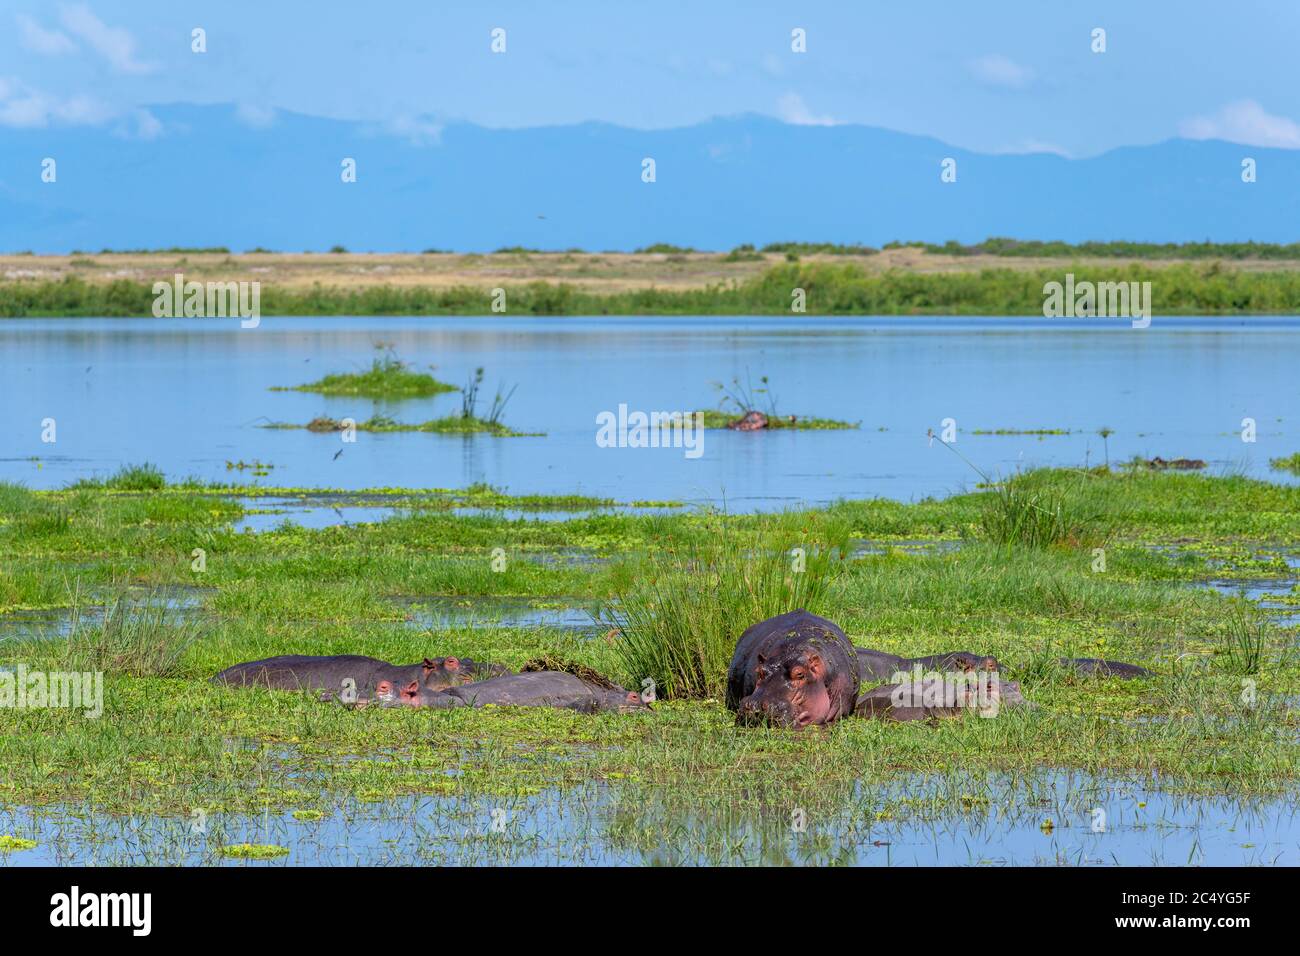 Groupe d'hippopotames communs (Hippopotamus amphibius), Parc national d'Amboseli, Kenya, Afrique Banque D'Images